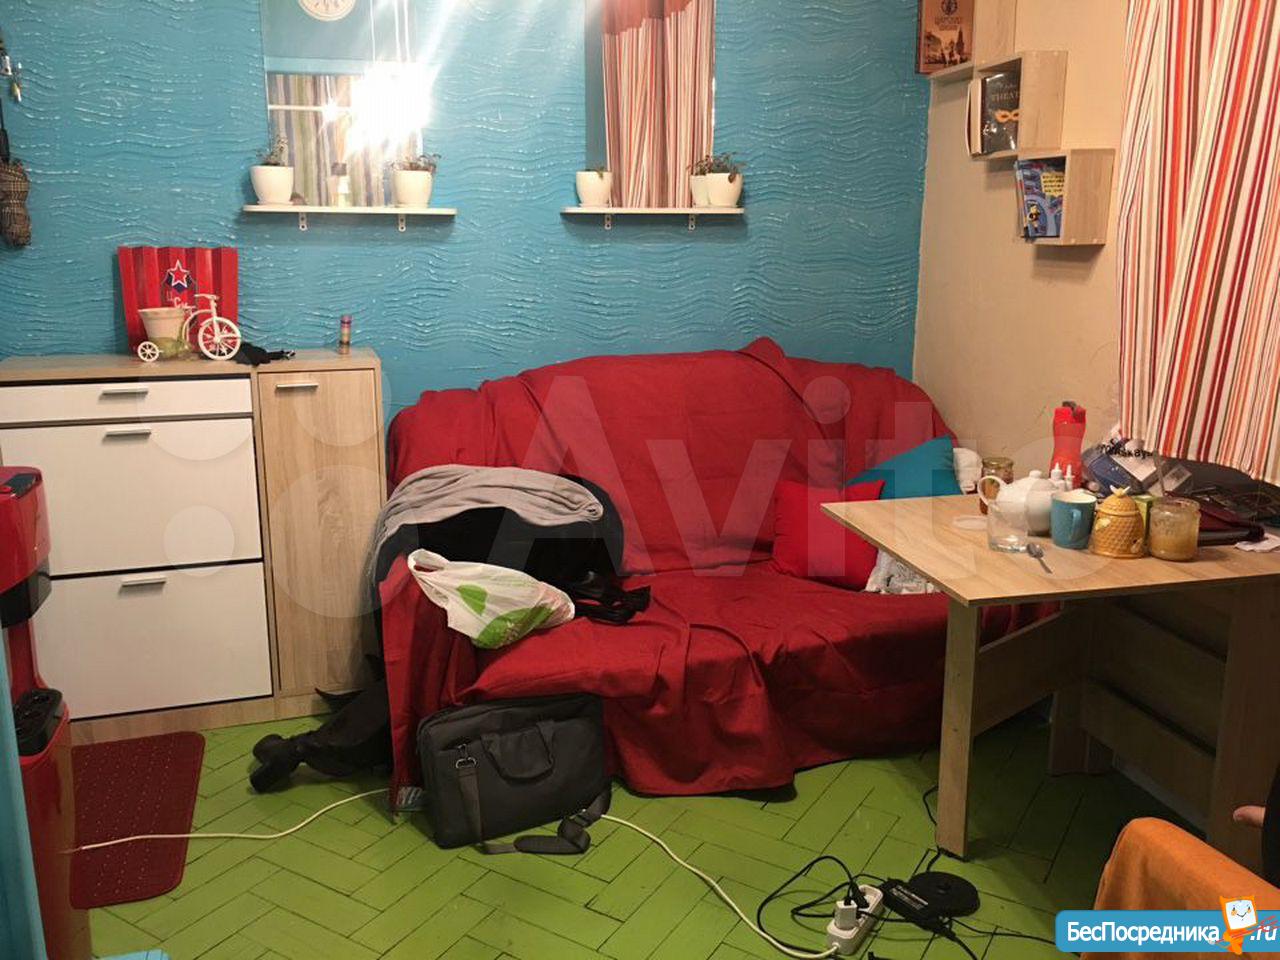 Сниму комнату в краснодаре без посредников от хозяина недорого с фото